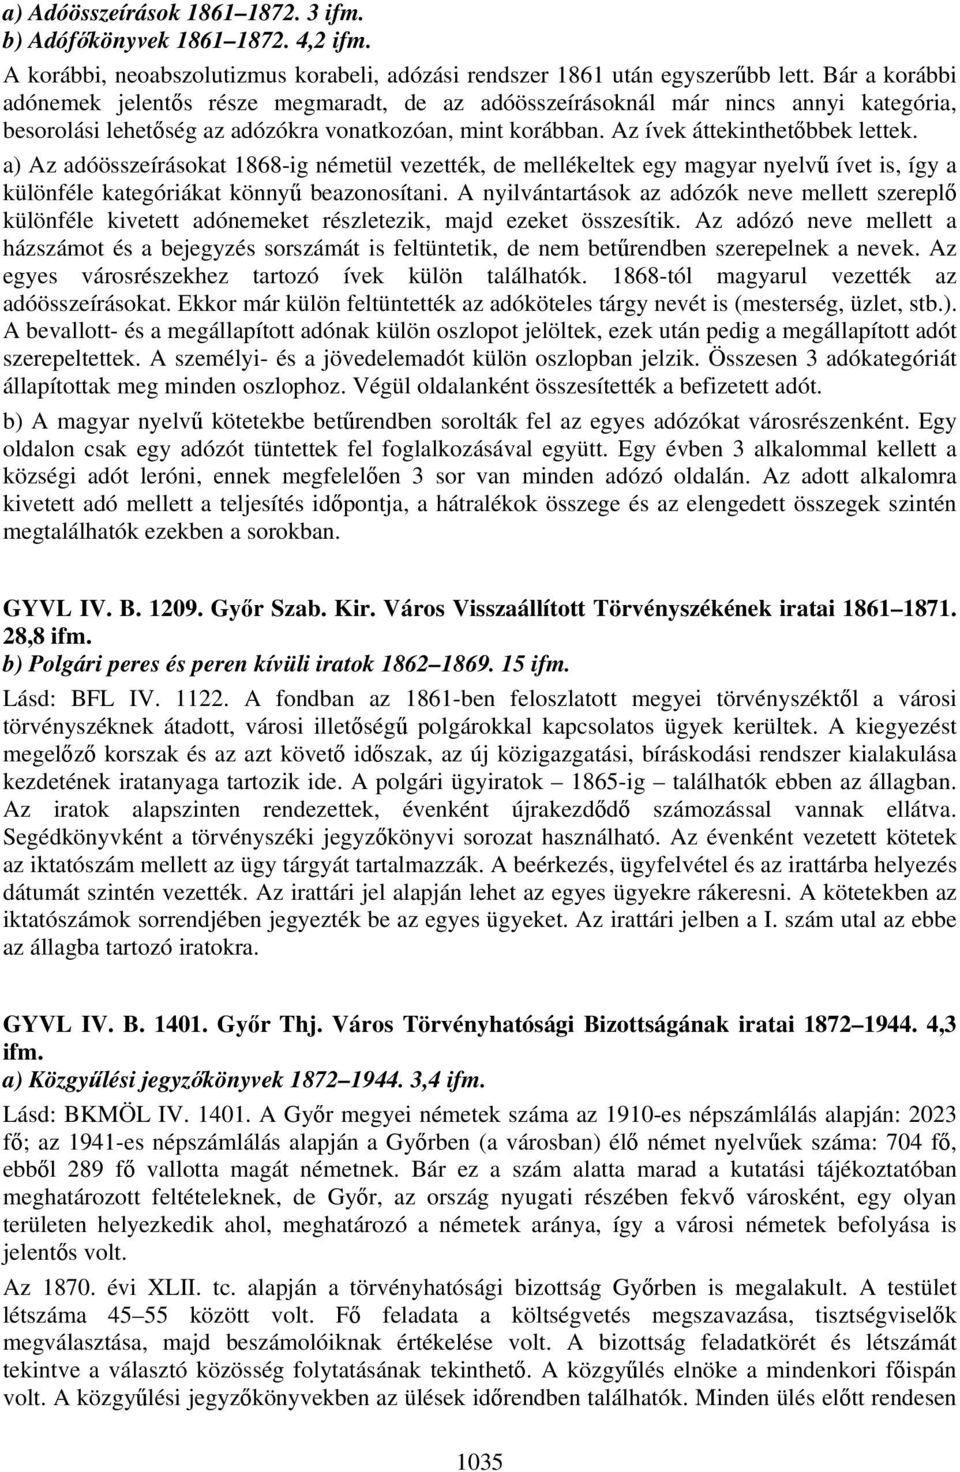 a) Az adóösszeírásokat 1868-ig németül vezették, de mellékeltek egy magyar nyelvű ívet is, így a különféle kategóriákat könnyű beazonosítani.